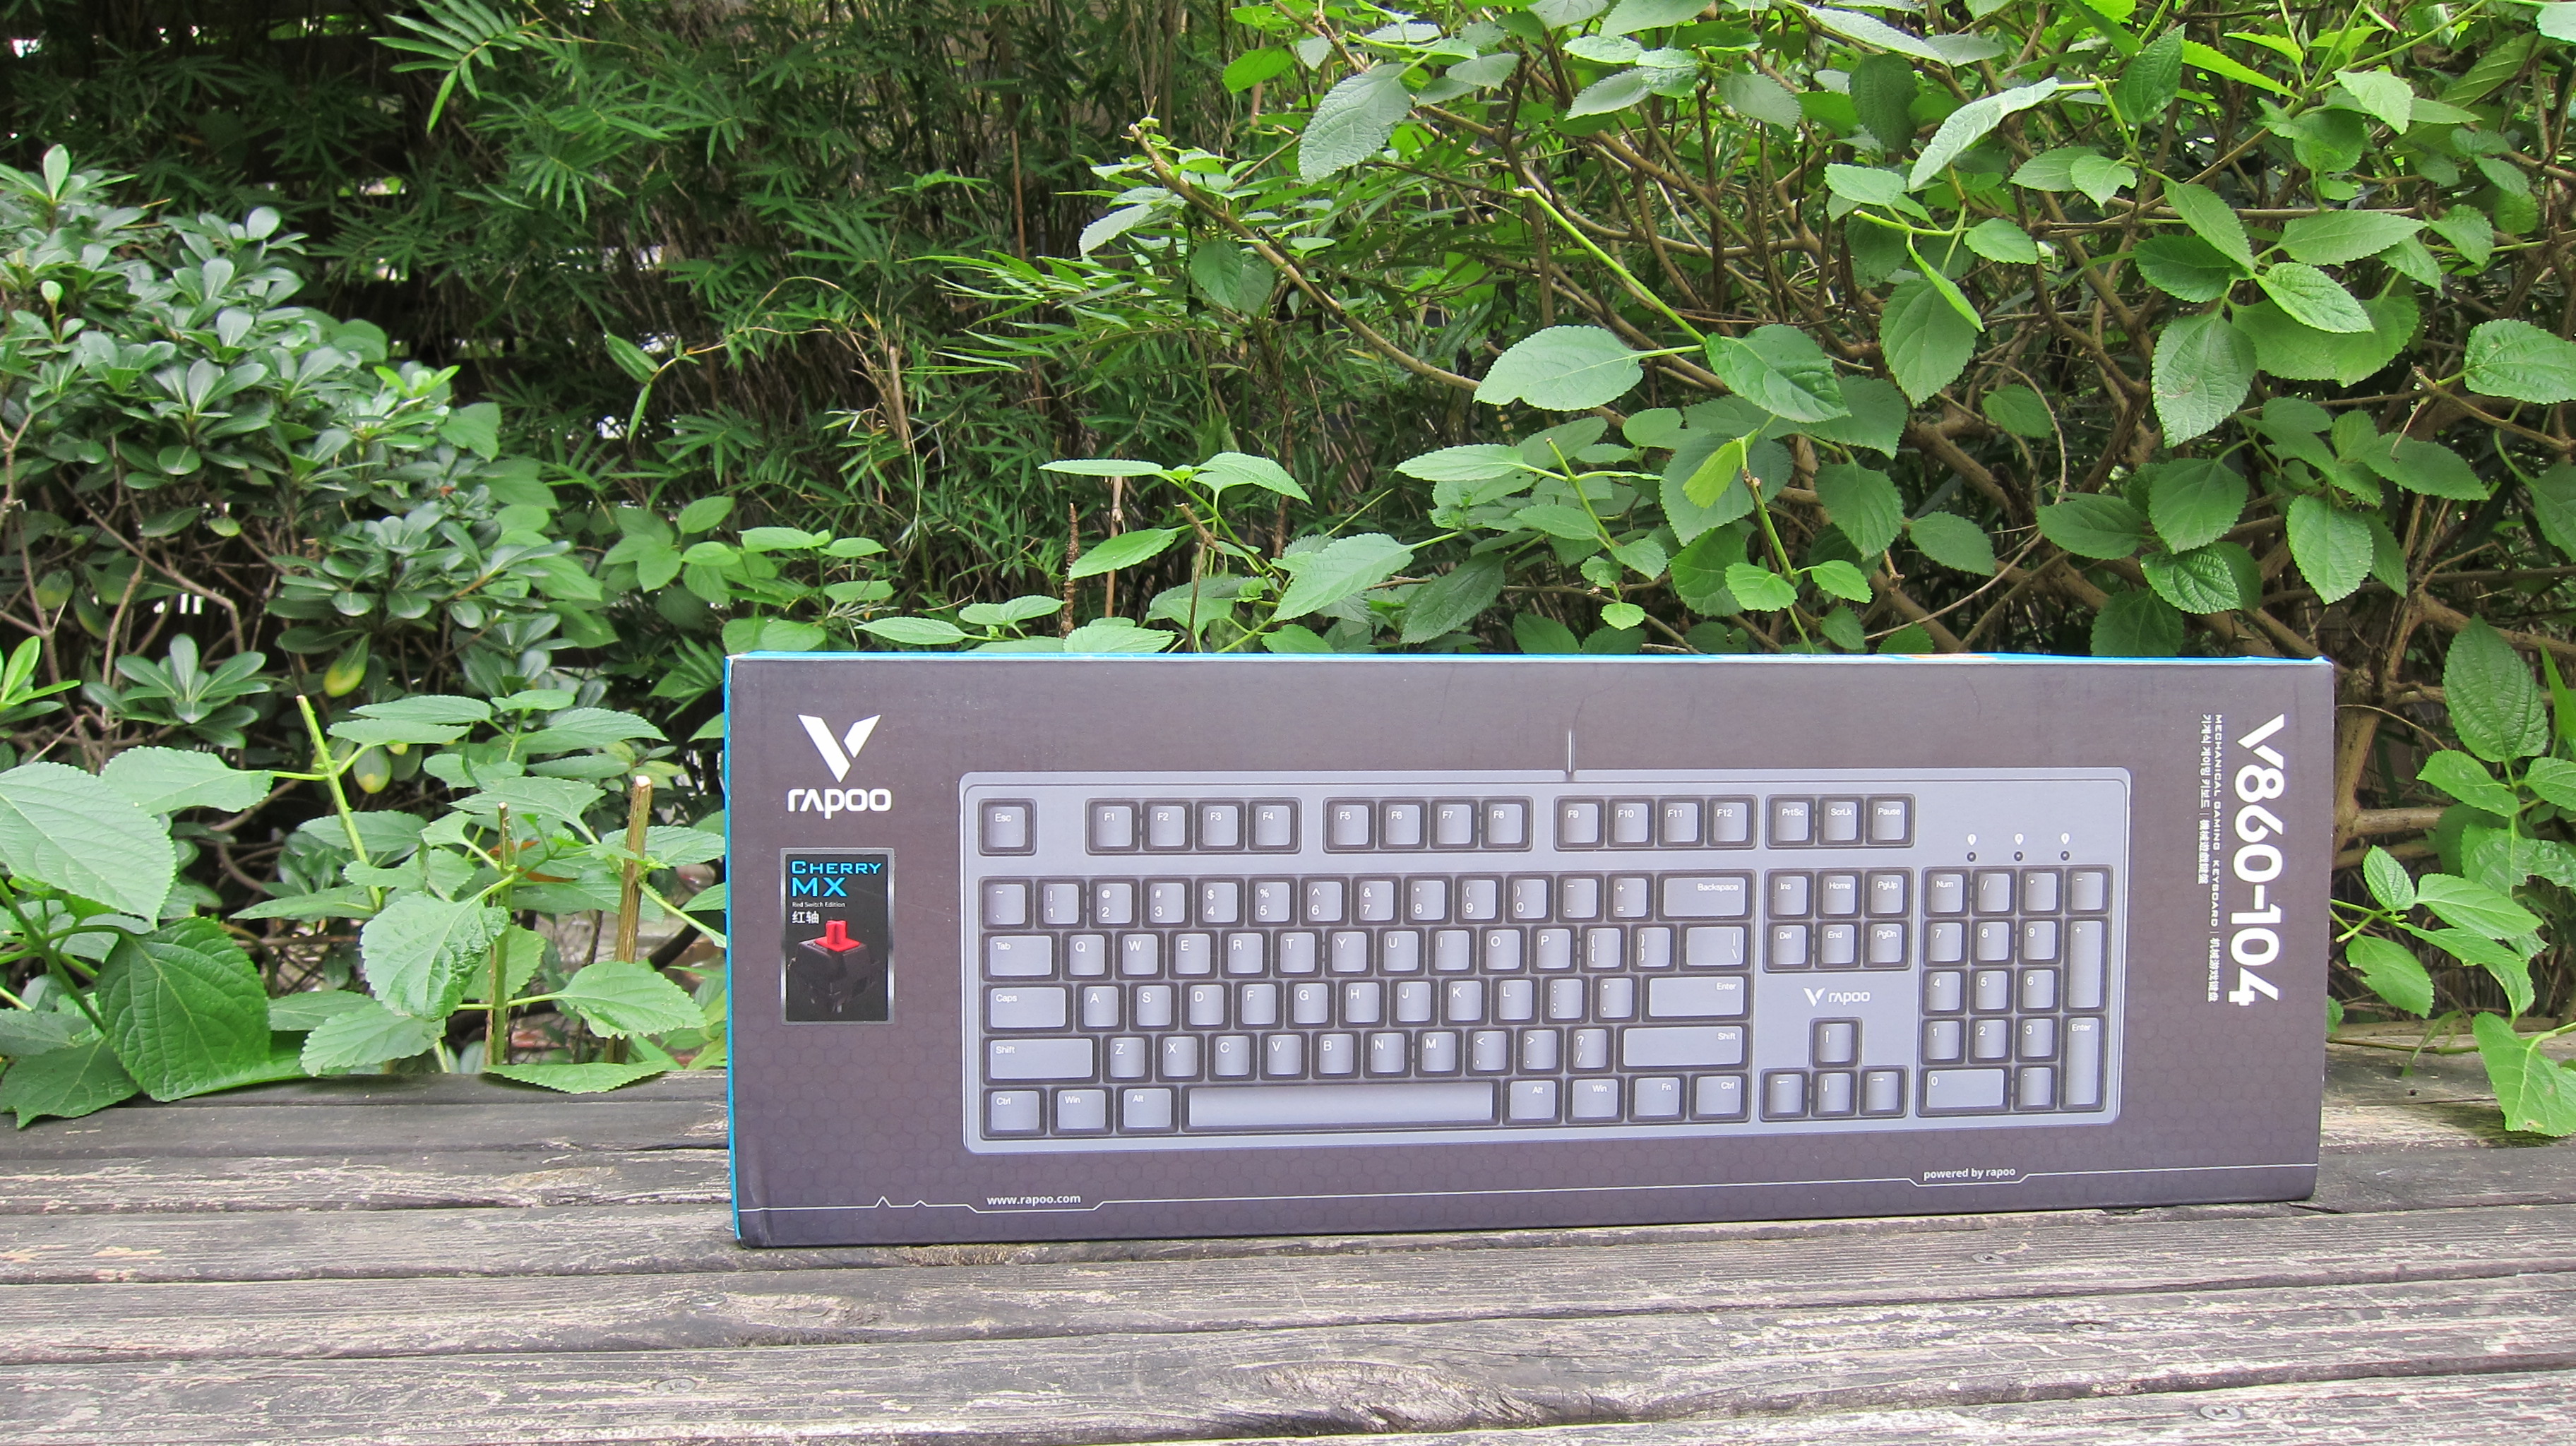 键盘|有取舍但又不妥协，崇本务实理念下的雷柏V860樱桃红轴机械键盘